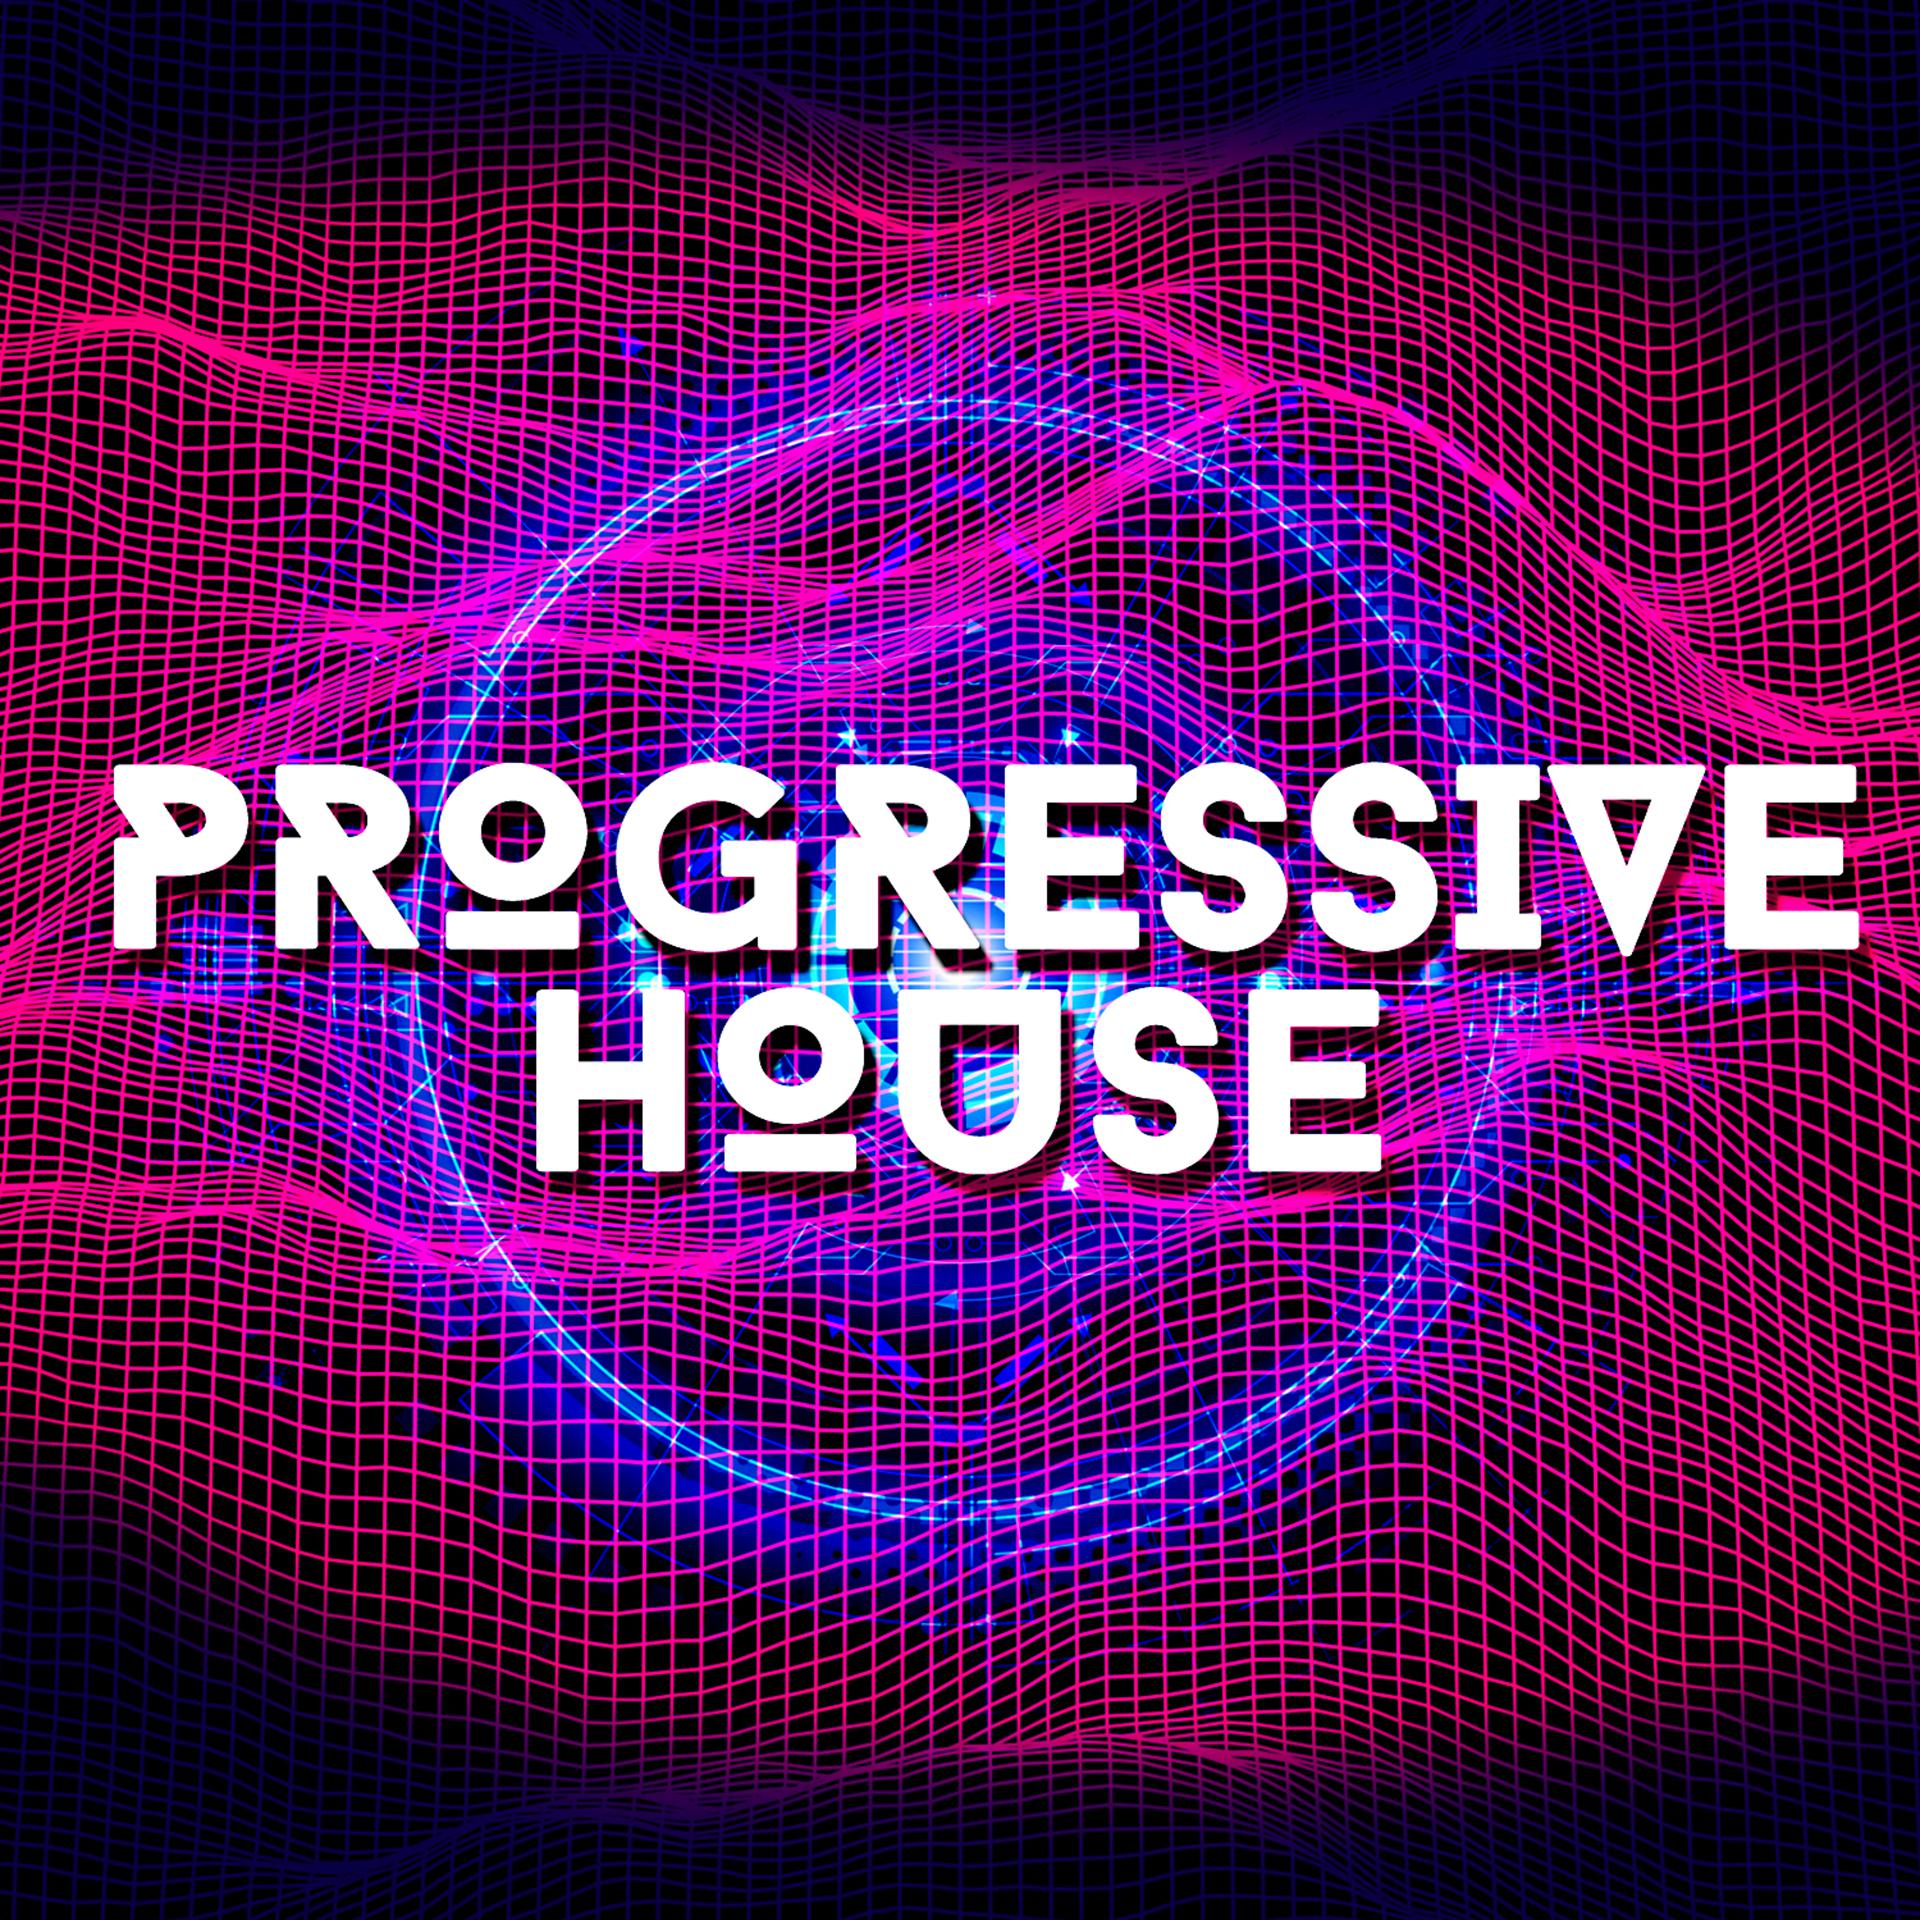 Прогрессив Хаус. Progressive House обложка. Progressive House картинки. Progressive House DJ. House music mp3